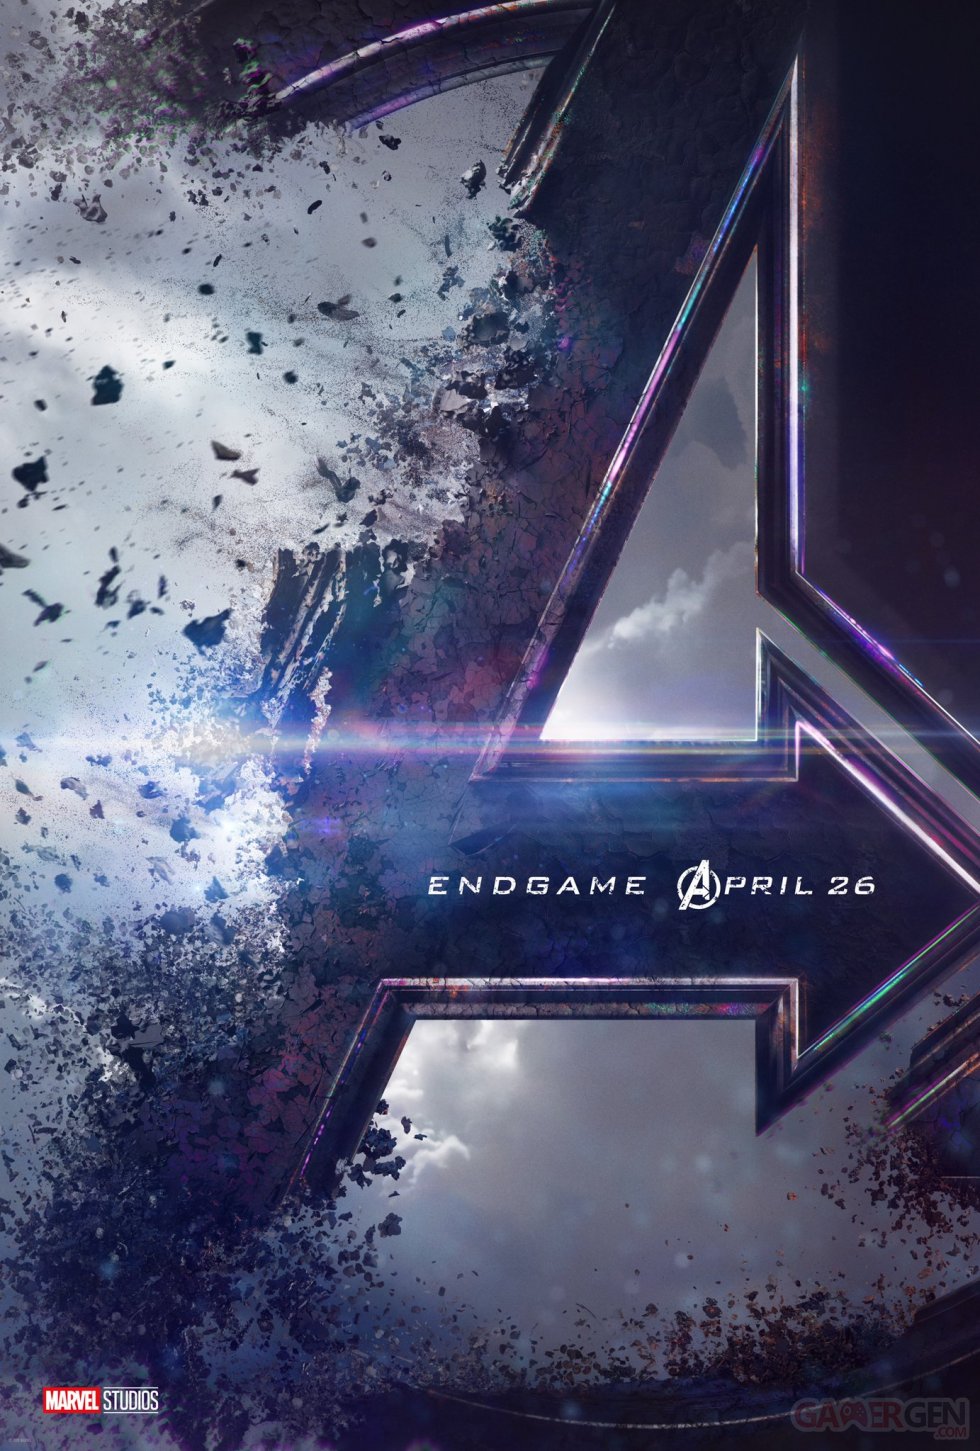 Marvel Avengers Endgame